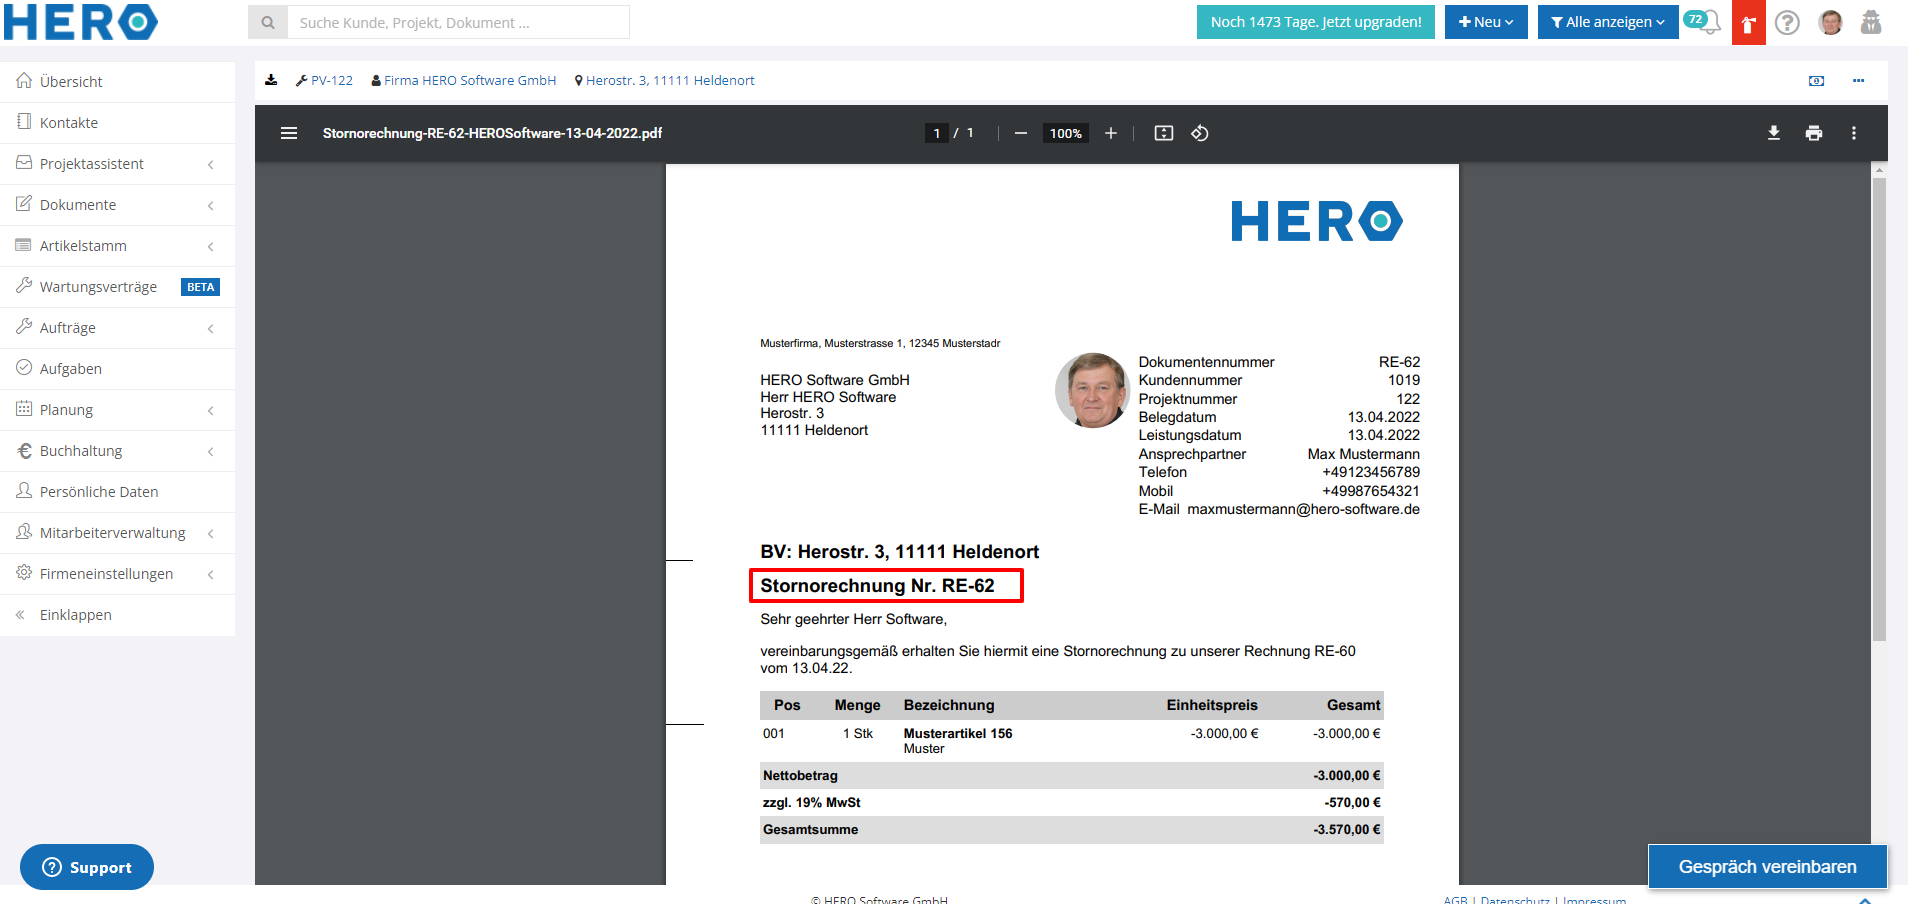 Stornorechnung-RE-62-HEROSoftware-13-04-2022_-_HERO.png